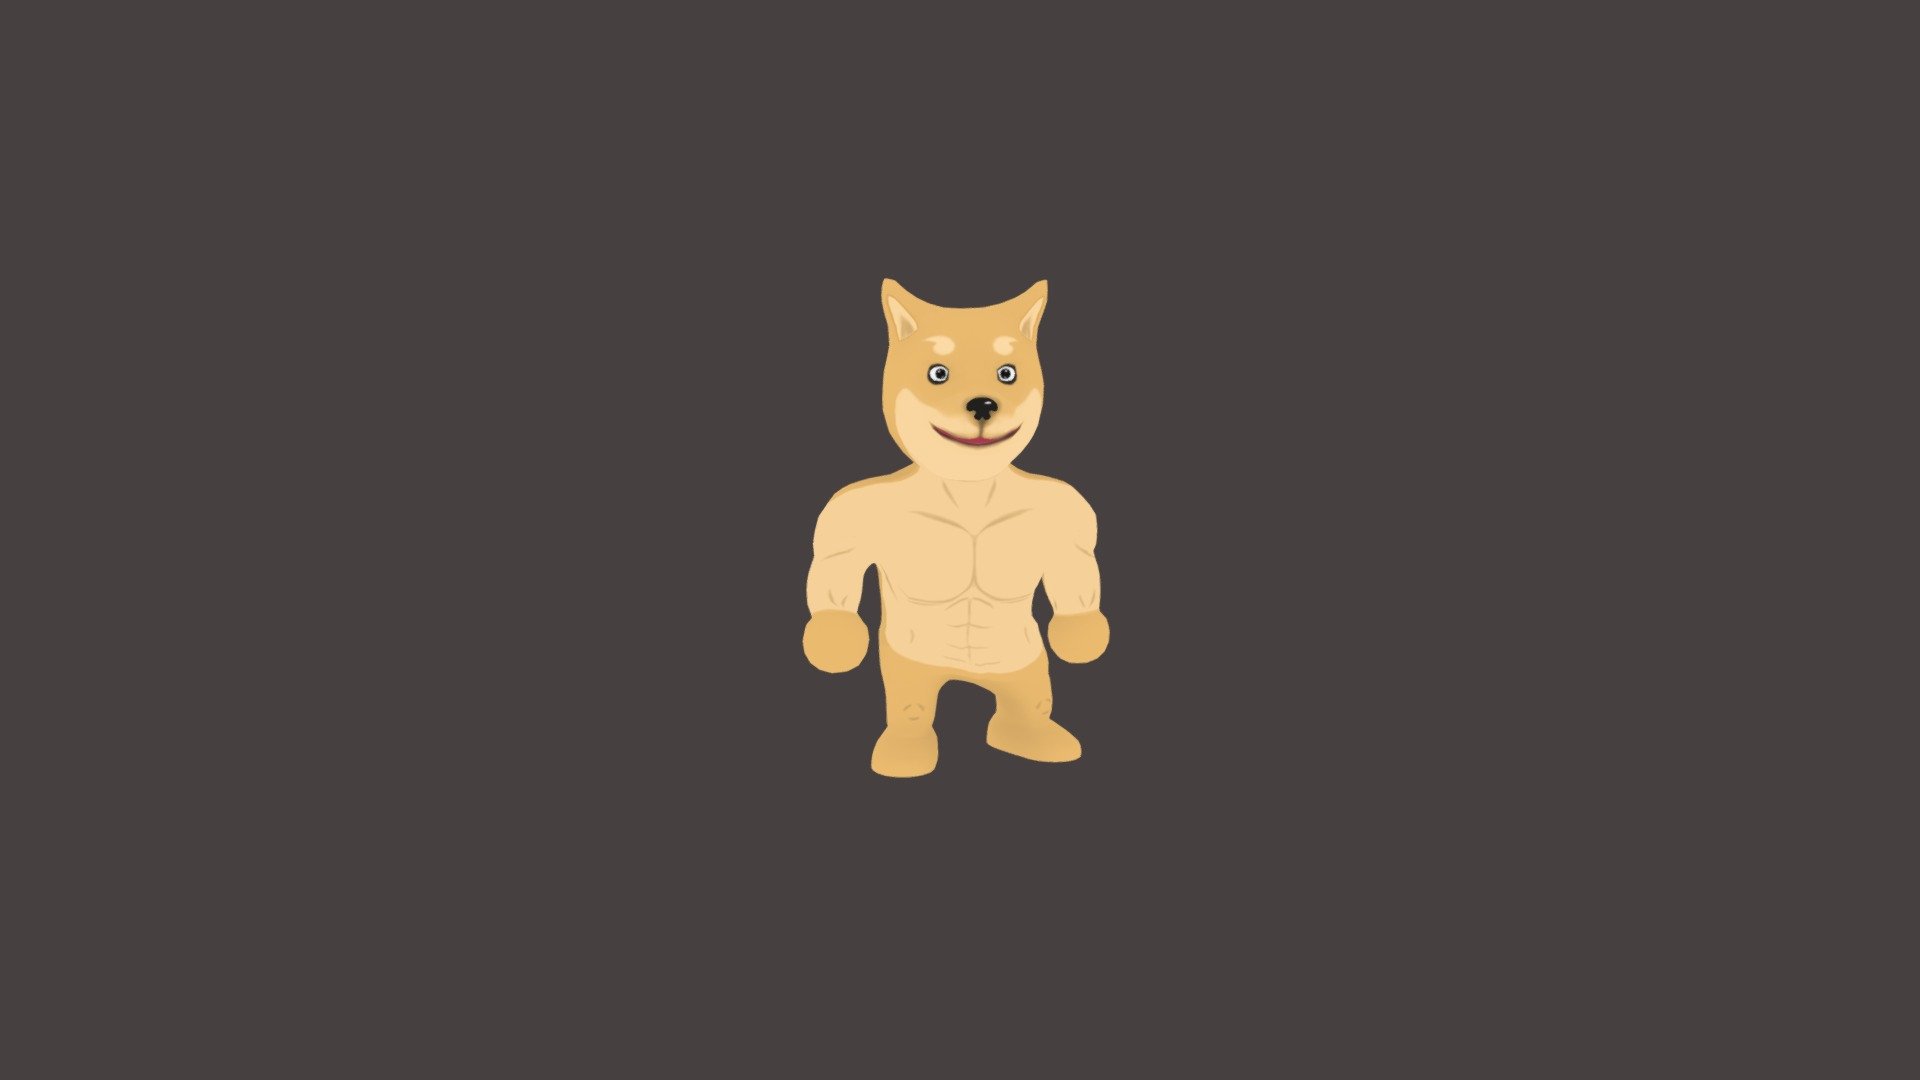 doge meme - Doge lowpoly - 3D model by hugannh3 (@emlanang) 3d model